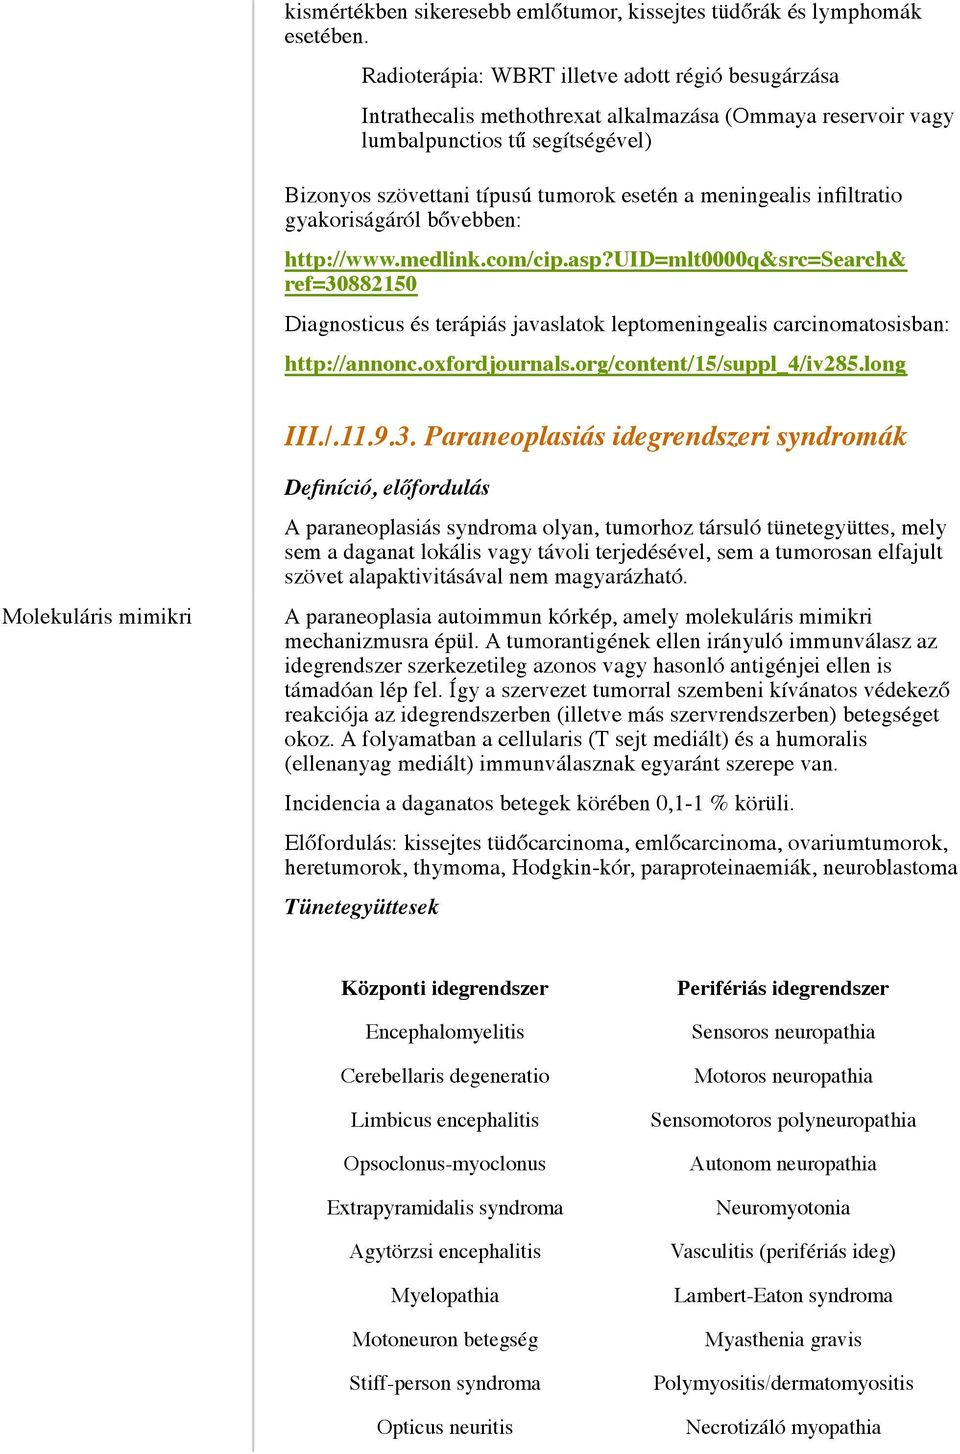 meningealis infiltratio gyakoriságáról bővebben: http://www.medlink.com/cip.asp?